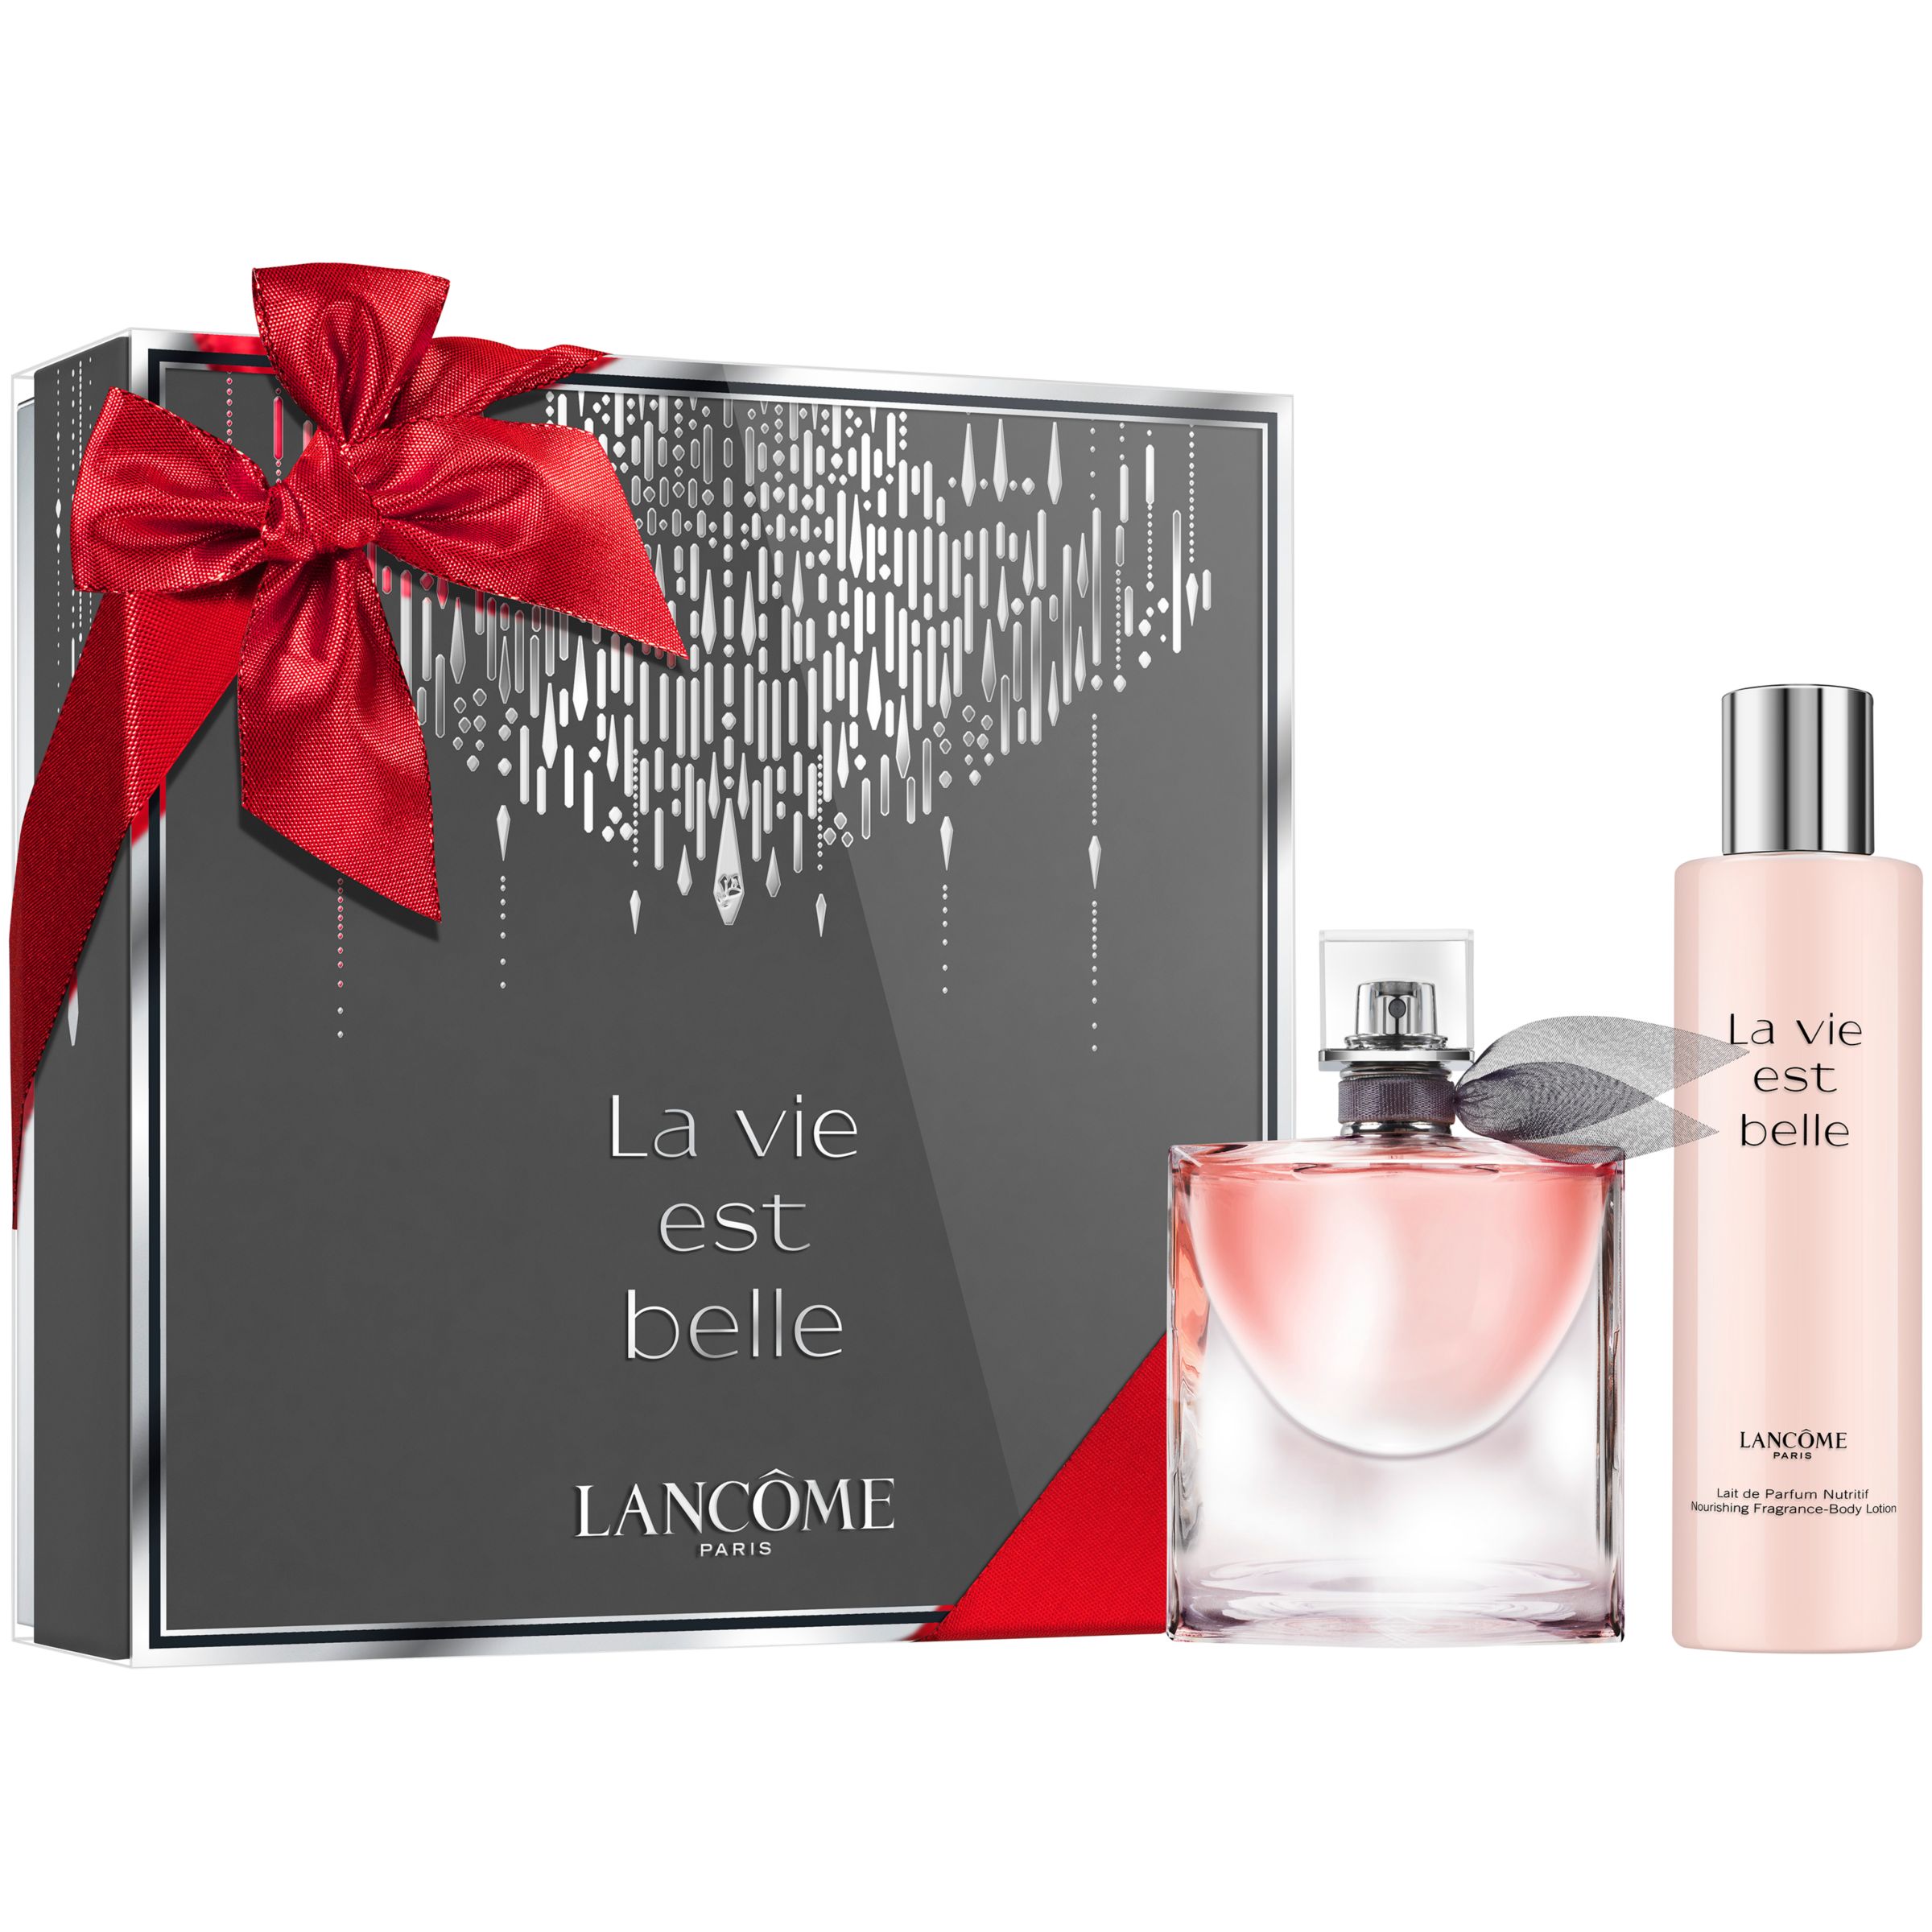 Lancôme La Vie Est Belle Gift Set at John Lewis & Partners